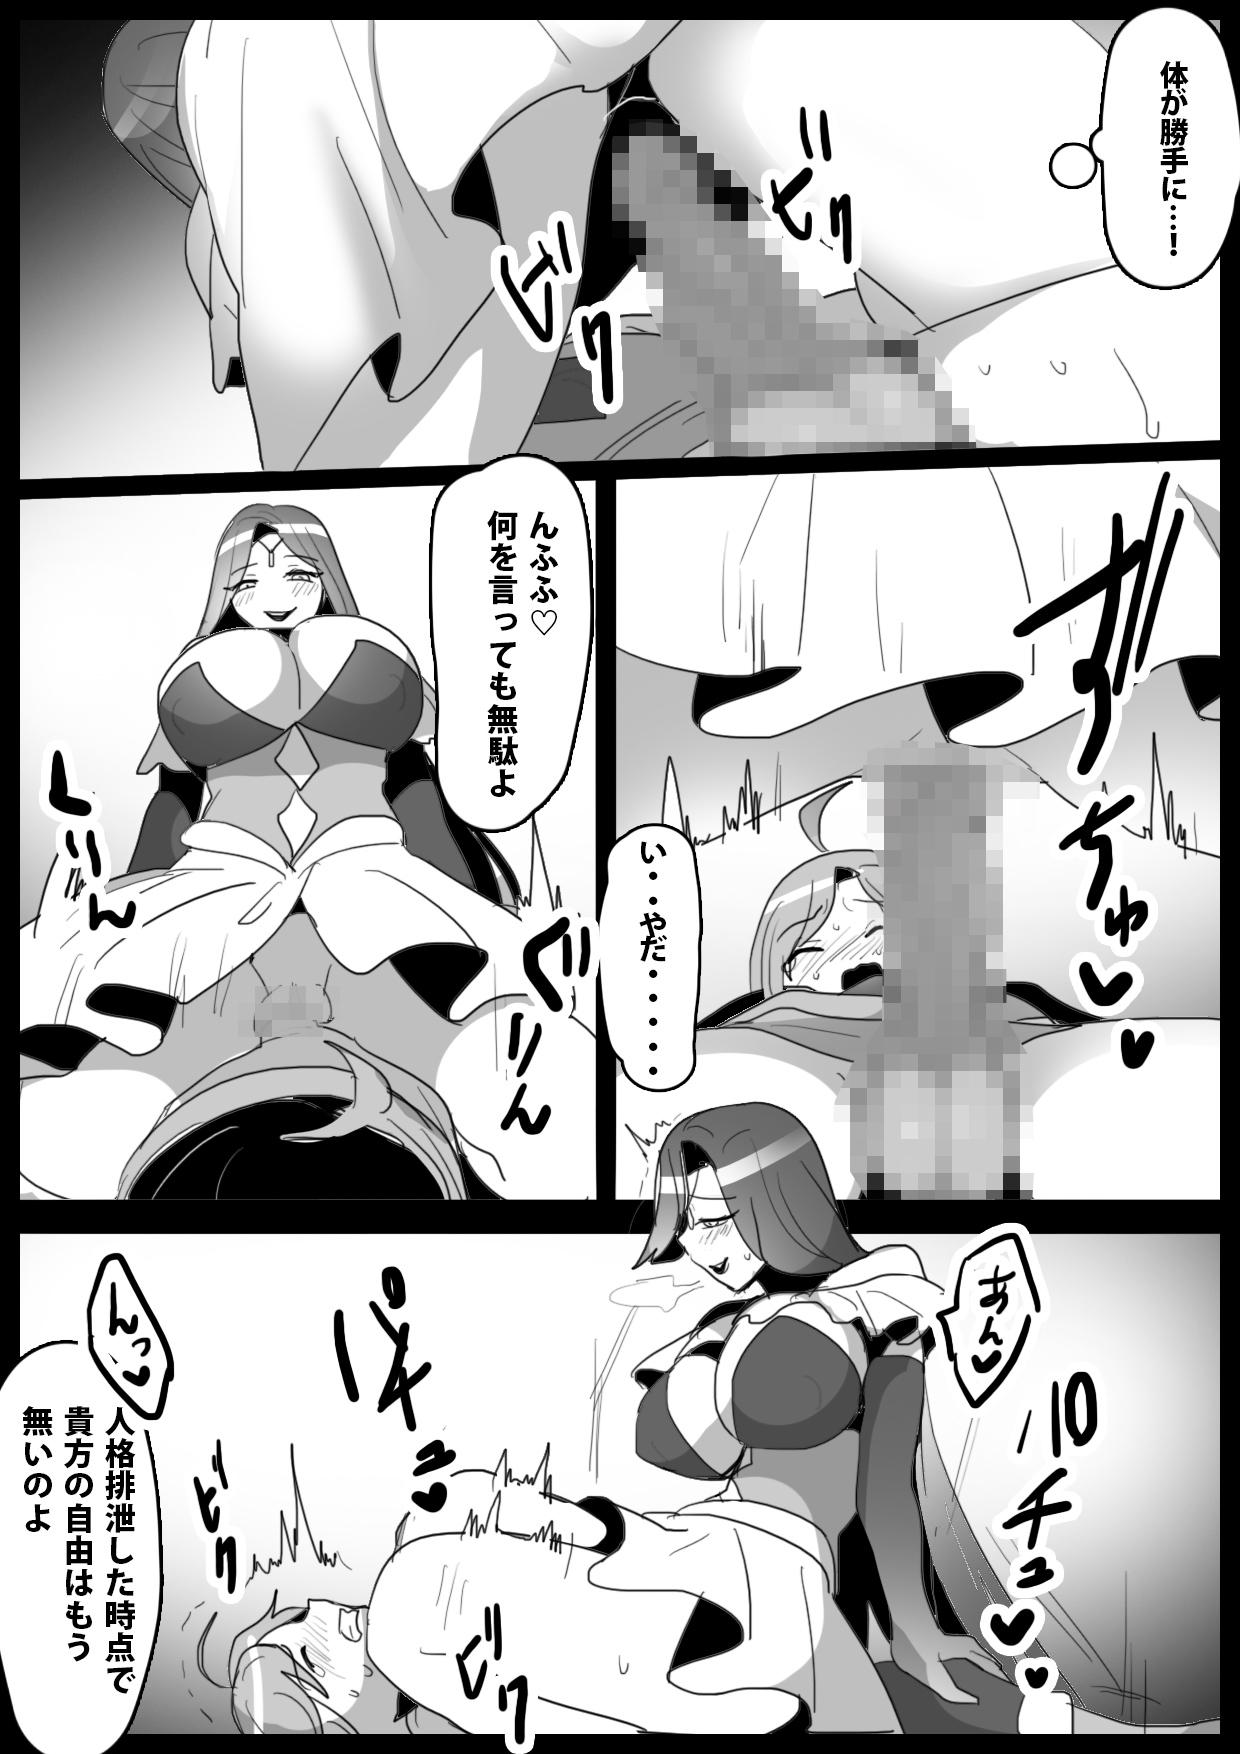 Blackcock mahō senshi, shinjiteita nakama ni uragirare, kyūshūsareru hanashi - Original Humiliation - Page 10